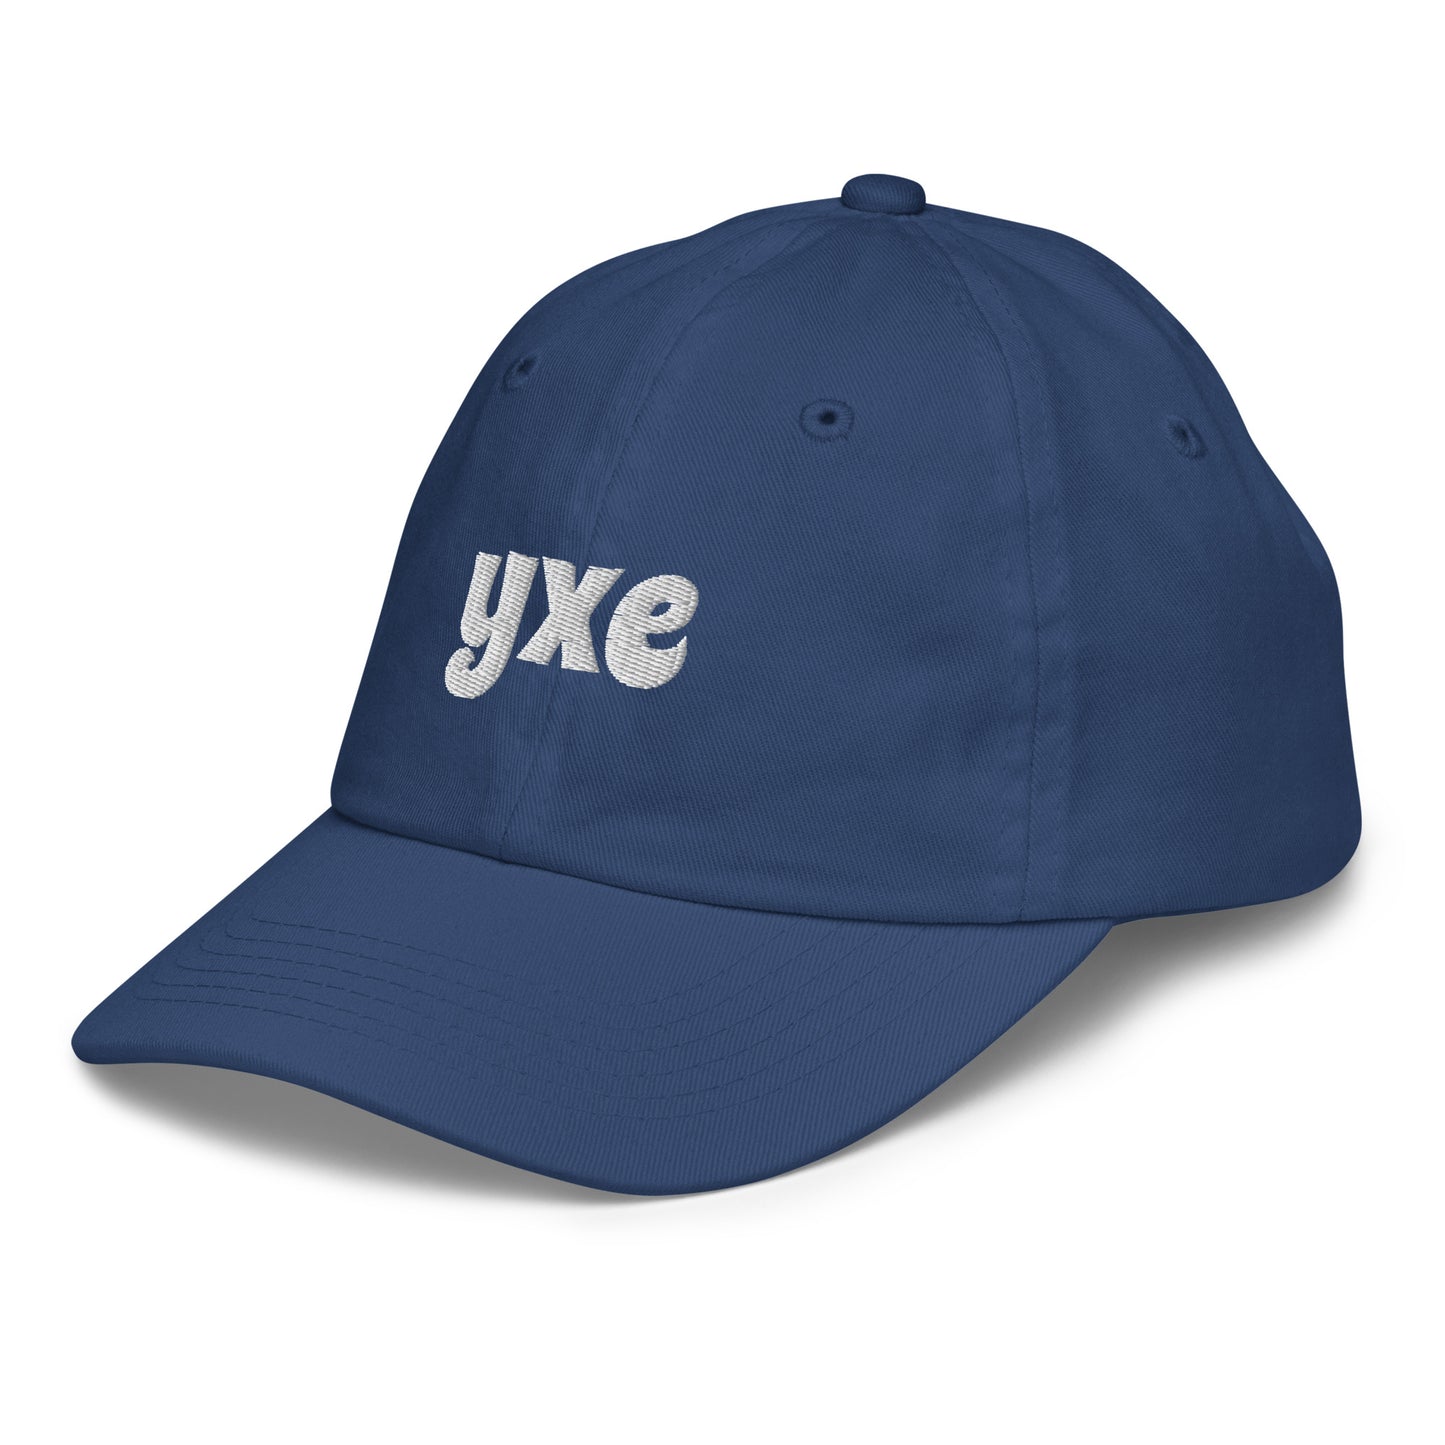 Groovy Kid's Baseball Cap - White • YXE Saskatoon • YHM Designs - Image 16